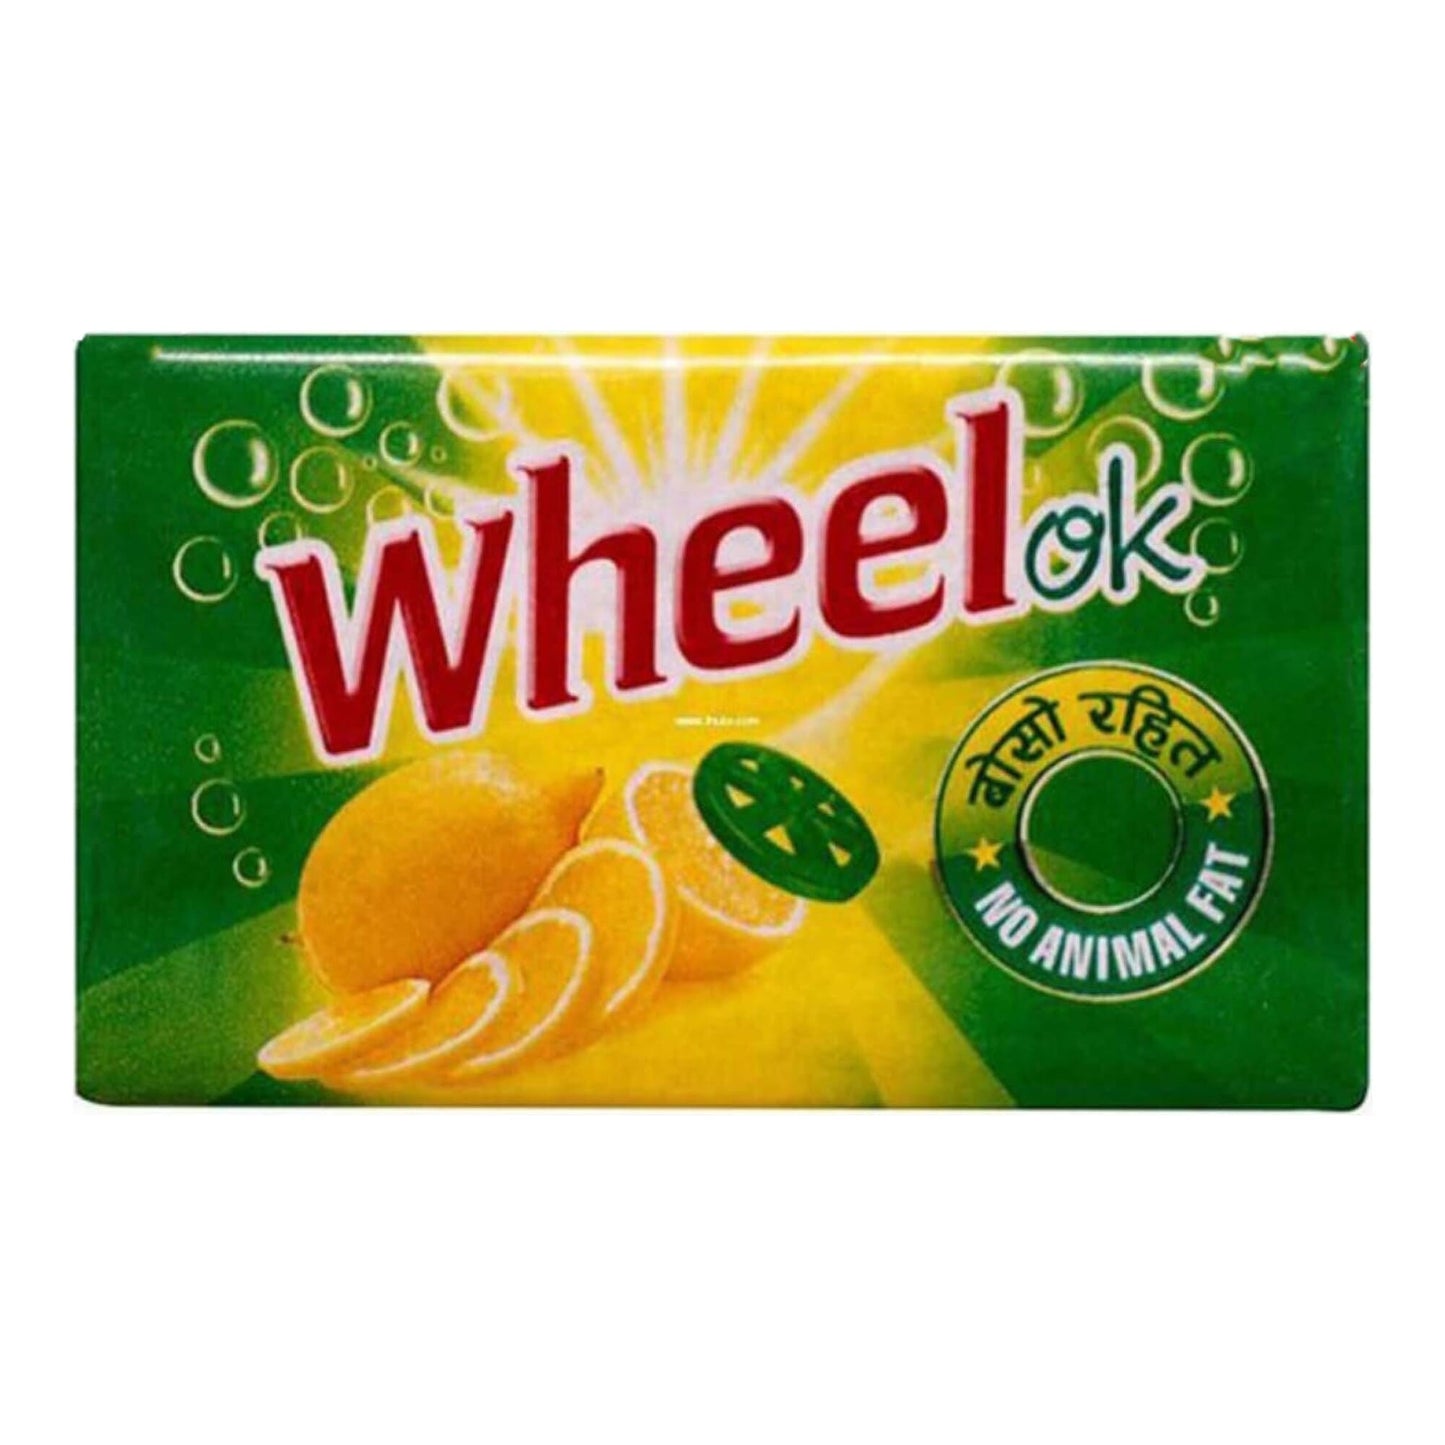 Wheel OK Bar